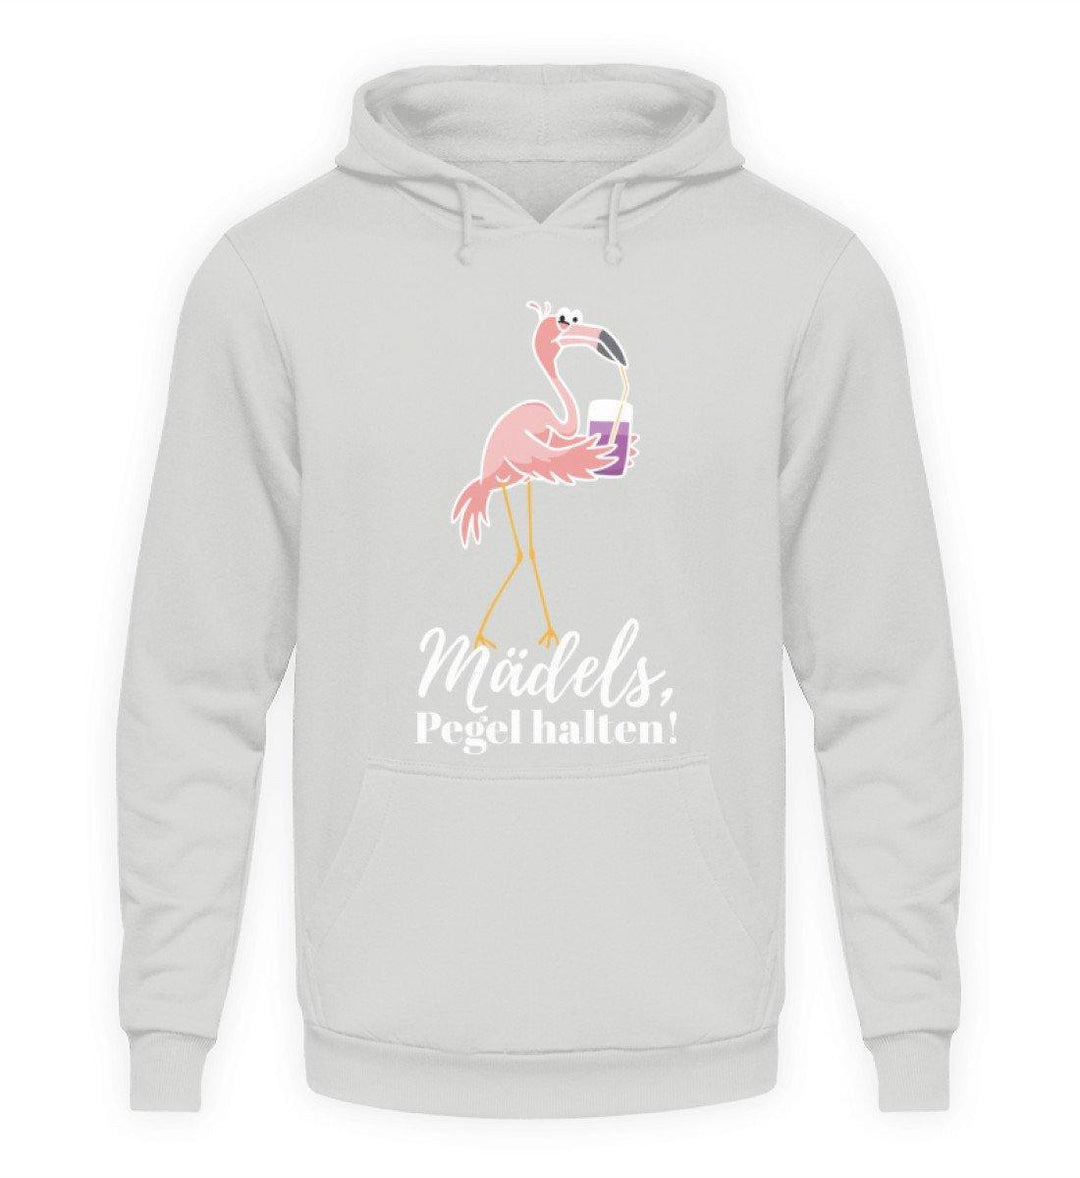 Mädels Pegel halten - Flamingo  - Unisex Kapuzenpullover Hoodie - Words on Shirts Sag es mit dem Mittelfinger Shirts Hoodies Sweatshirt Taschen Gymsack Spruch Sprüche Statement